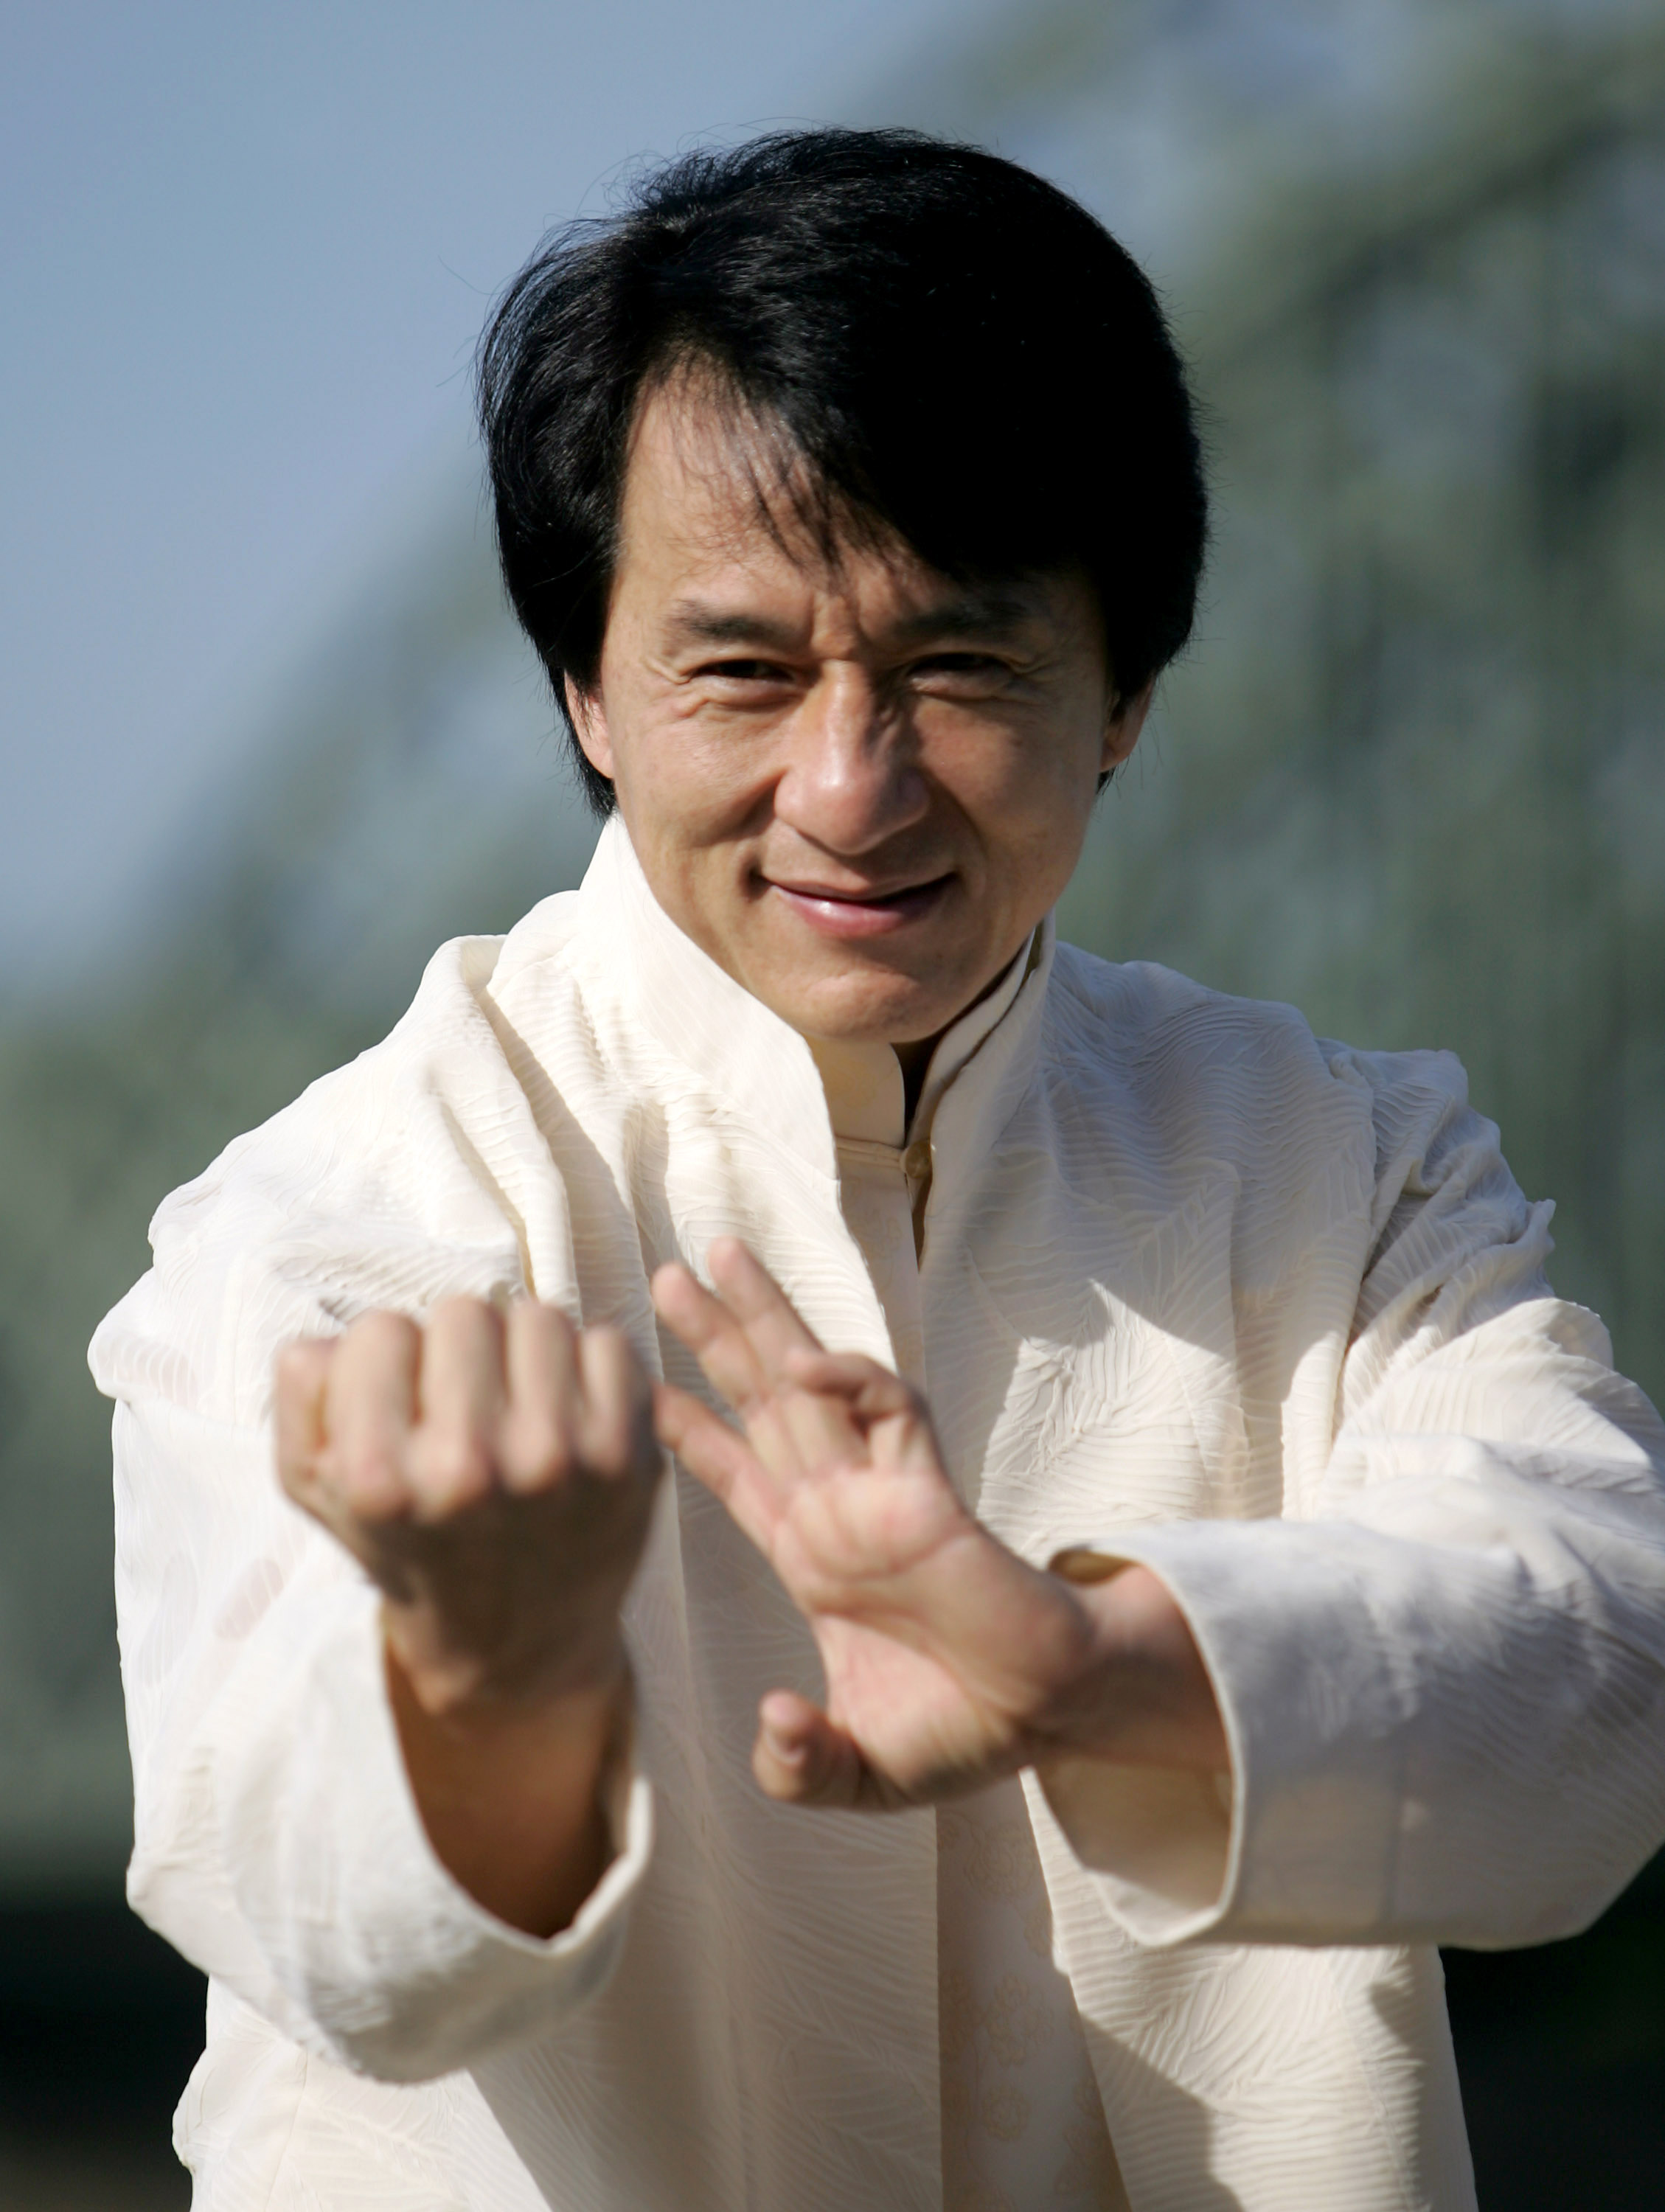 Jackie Chan posando para una foto antes del estreno de "New Police Story" en Colonia, Alemania, el 10 de octubre de 2005 | Foto: Getty Images